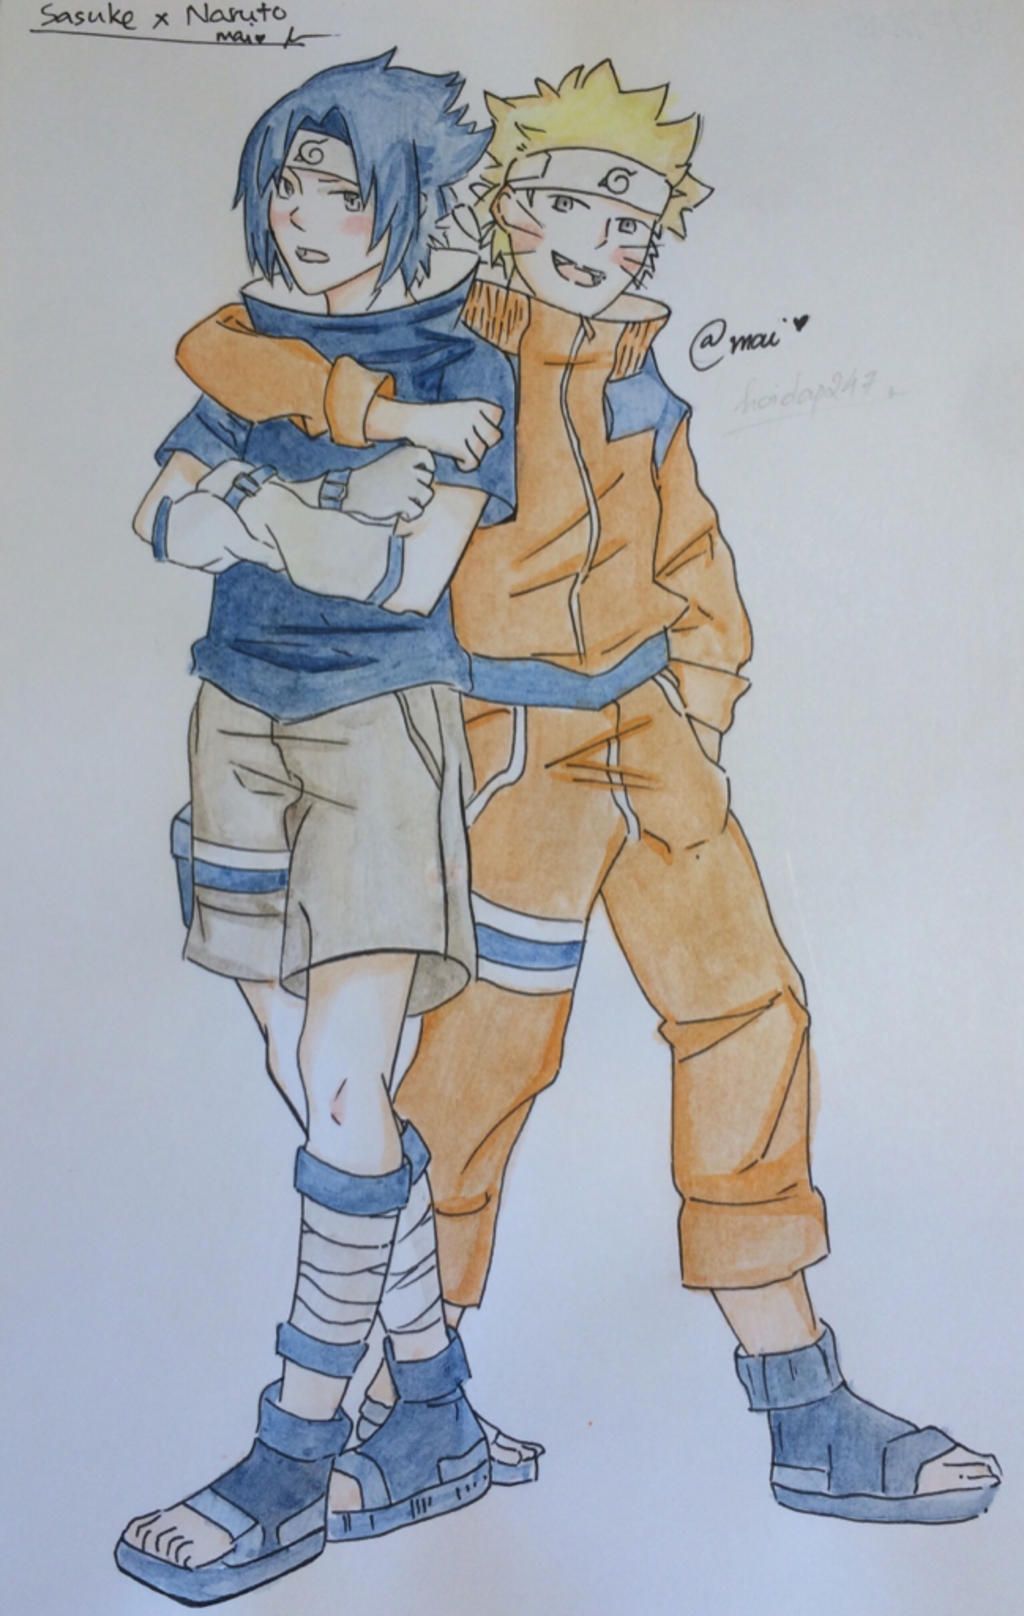 Vẽ cho mình Sasuke và Naruto, tranh vẽ tay ,có màu thì càng tốt Mong bạn  ctl cuber (fan nả) vào câu hỏi 900233 - hoidap247.com